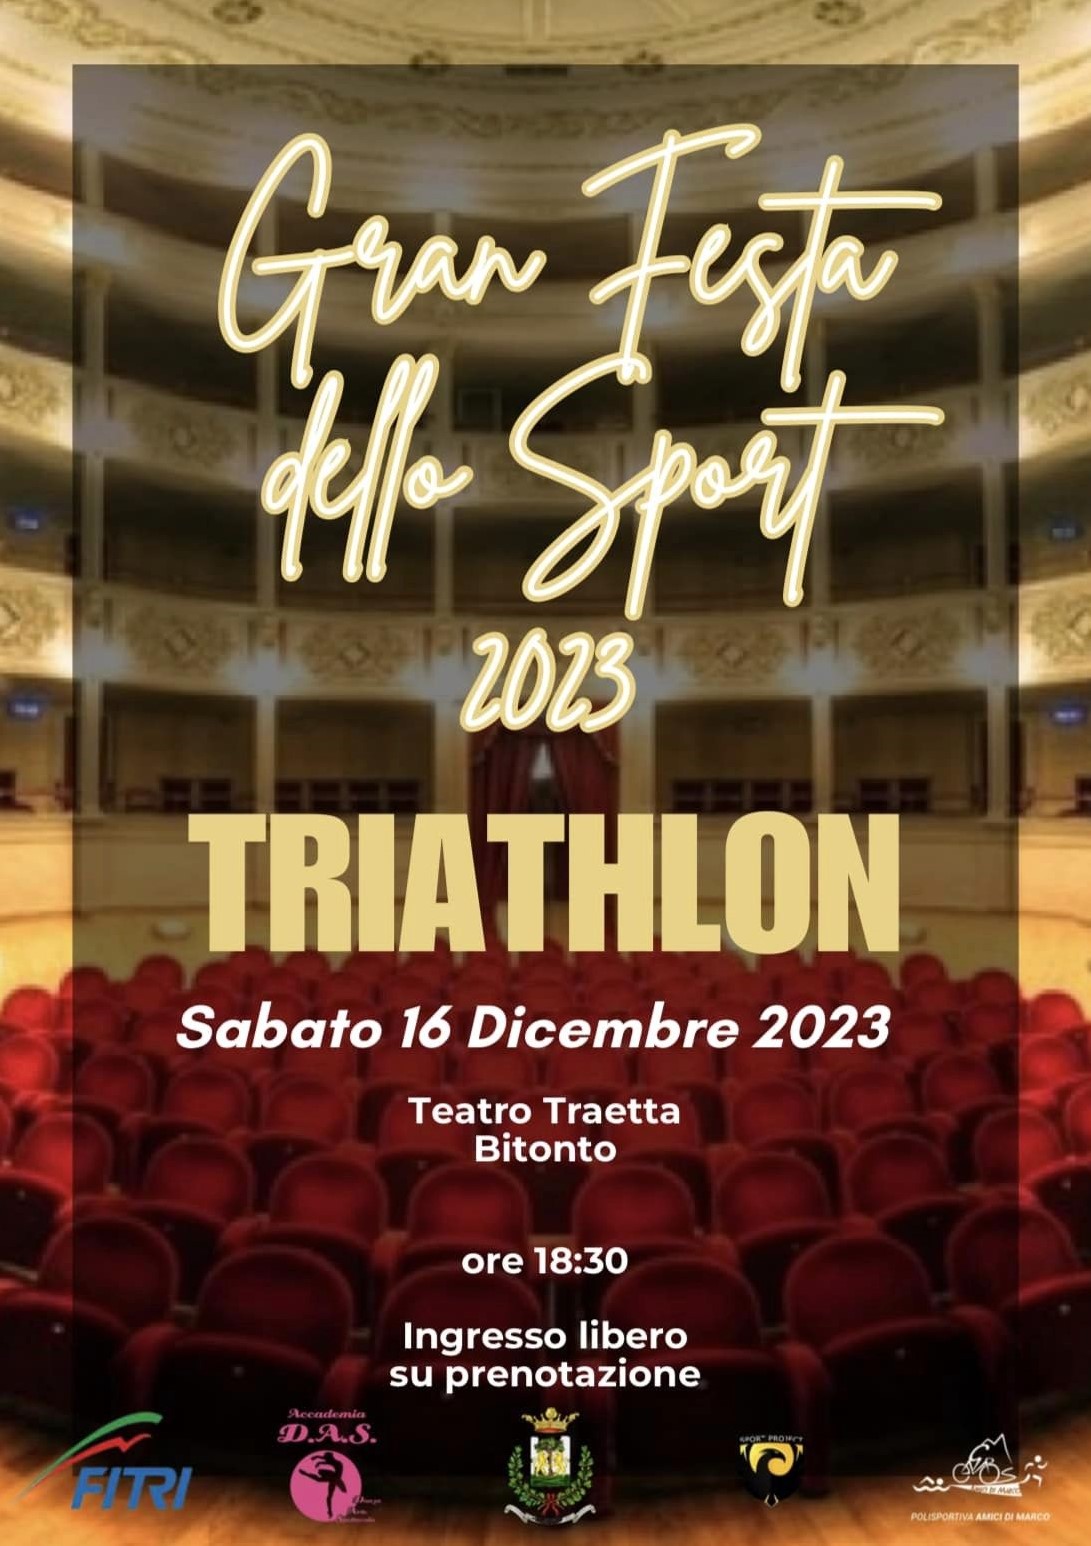 Ultimi preparativi per il galà del triathlon pugliese alla “Gran Festa dello Sport 2023” di Bitonto